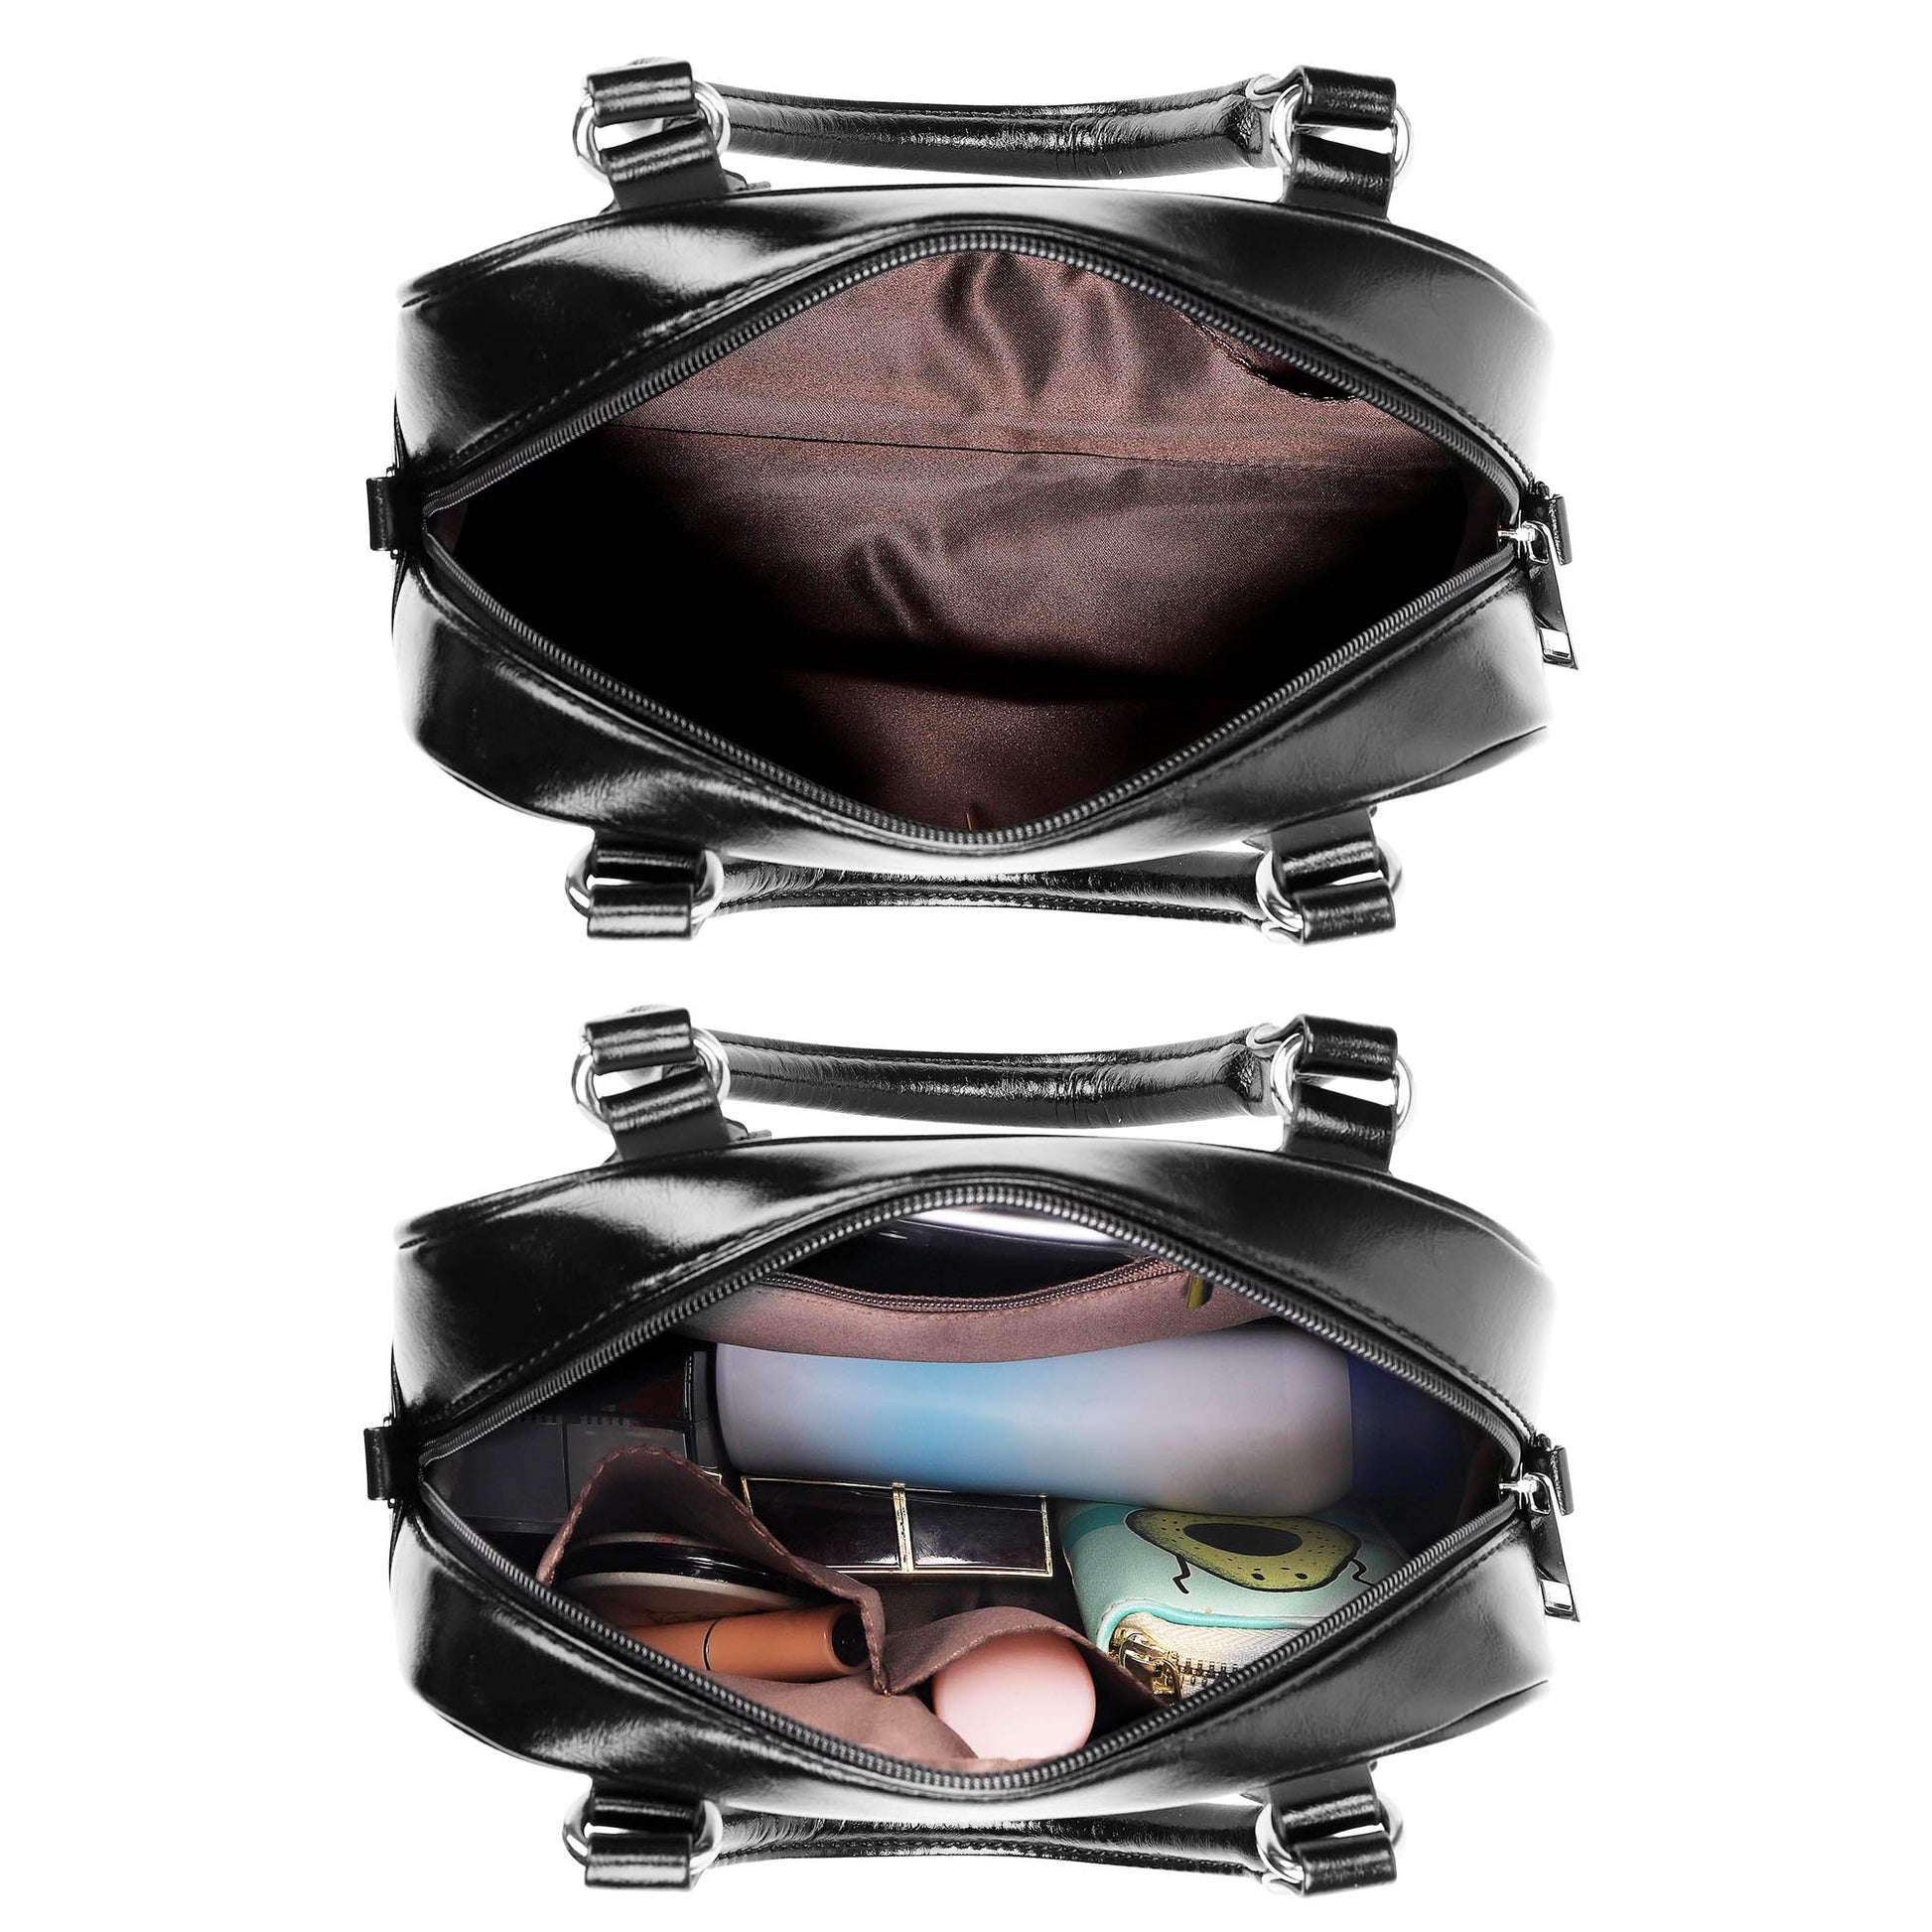 Marshall Tartan Shoulder Handbags - Tartanvibesclothing